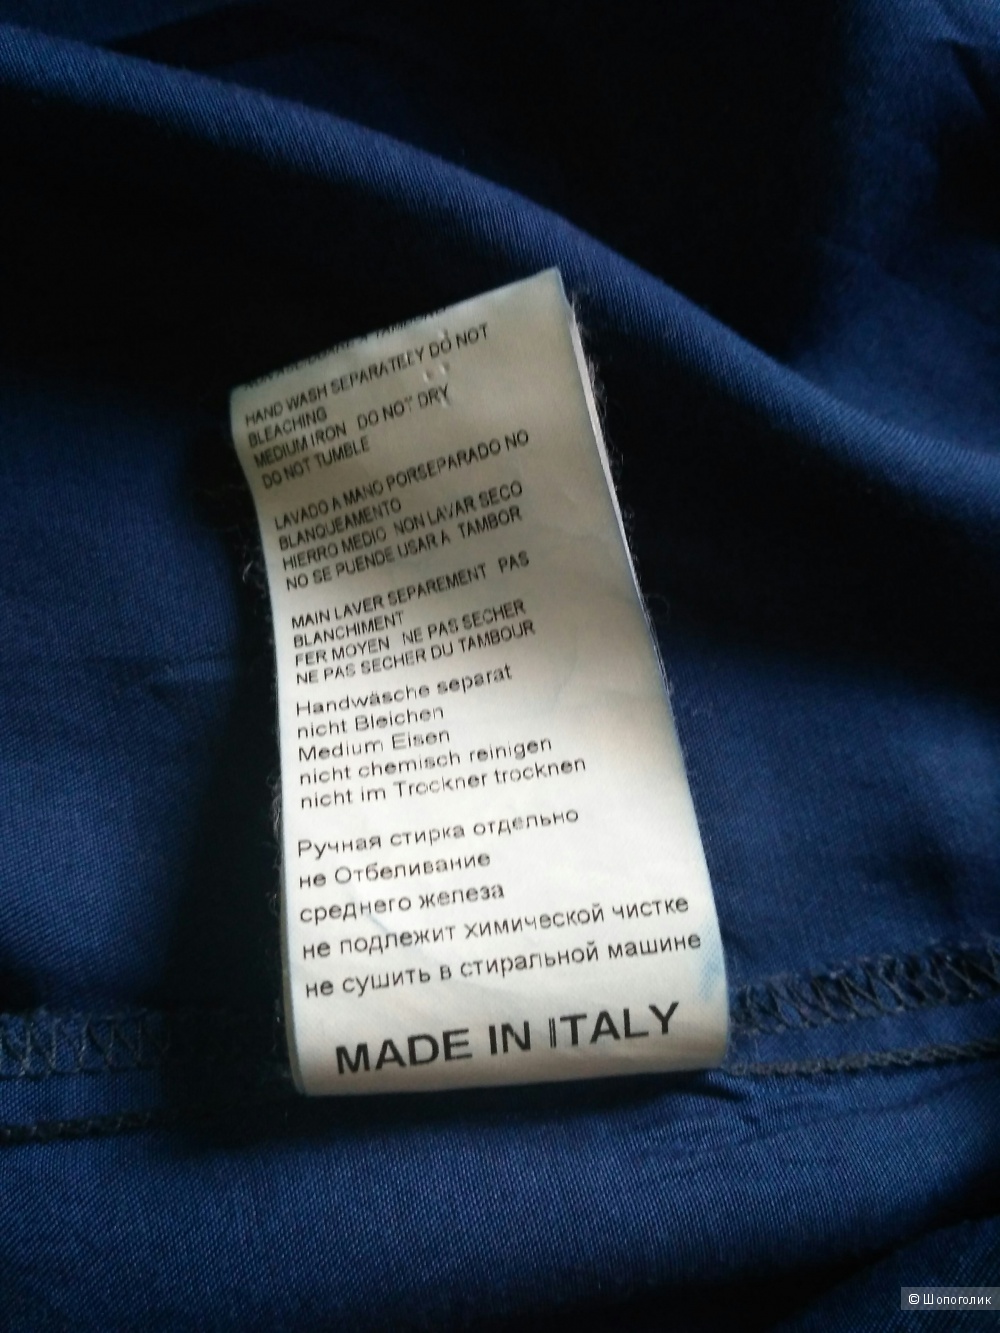 Рубашка KAOS jeans, размер l